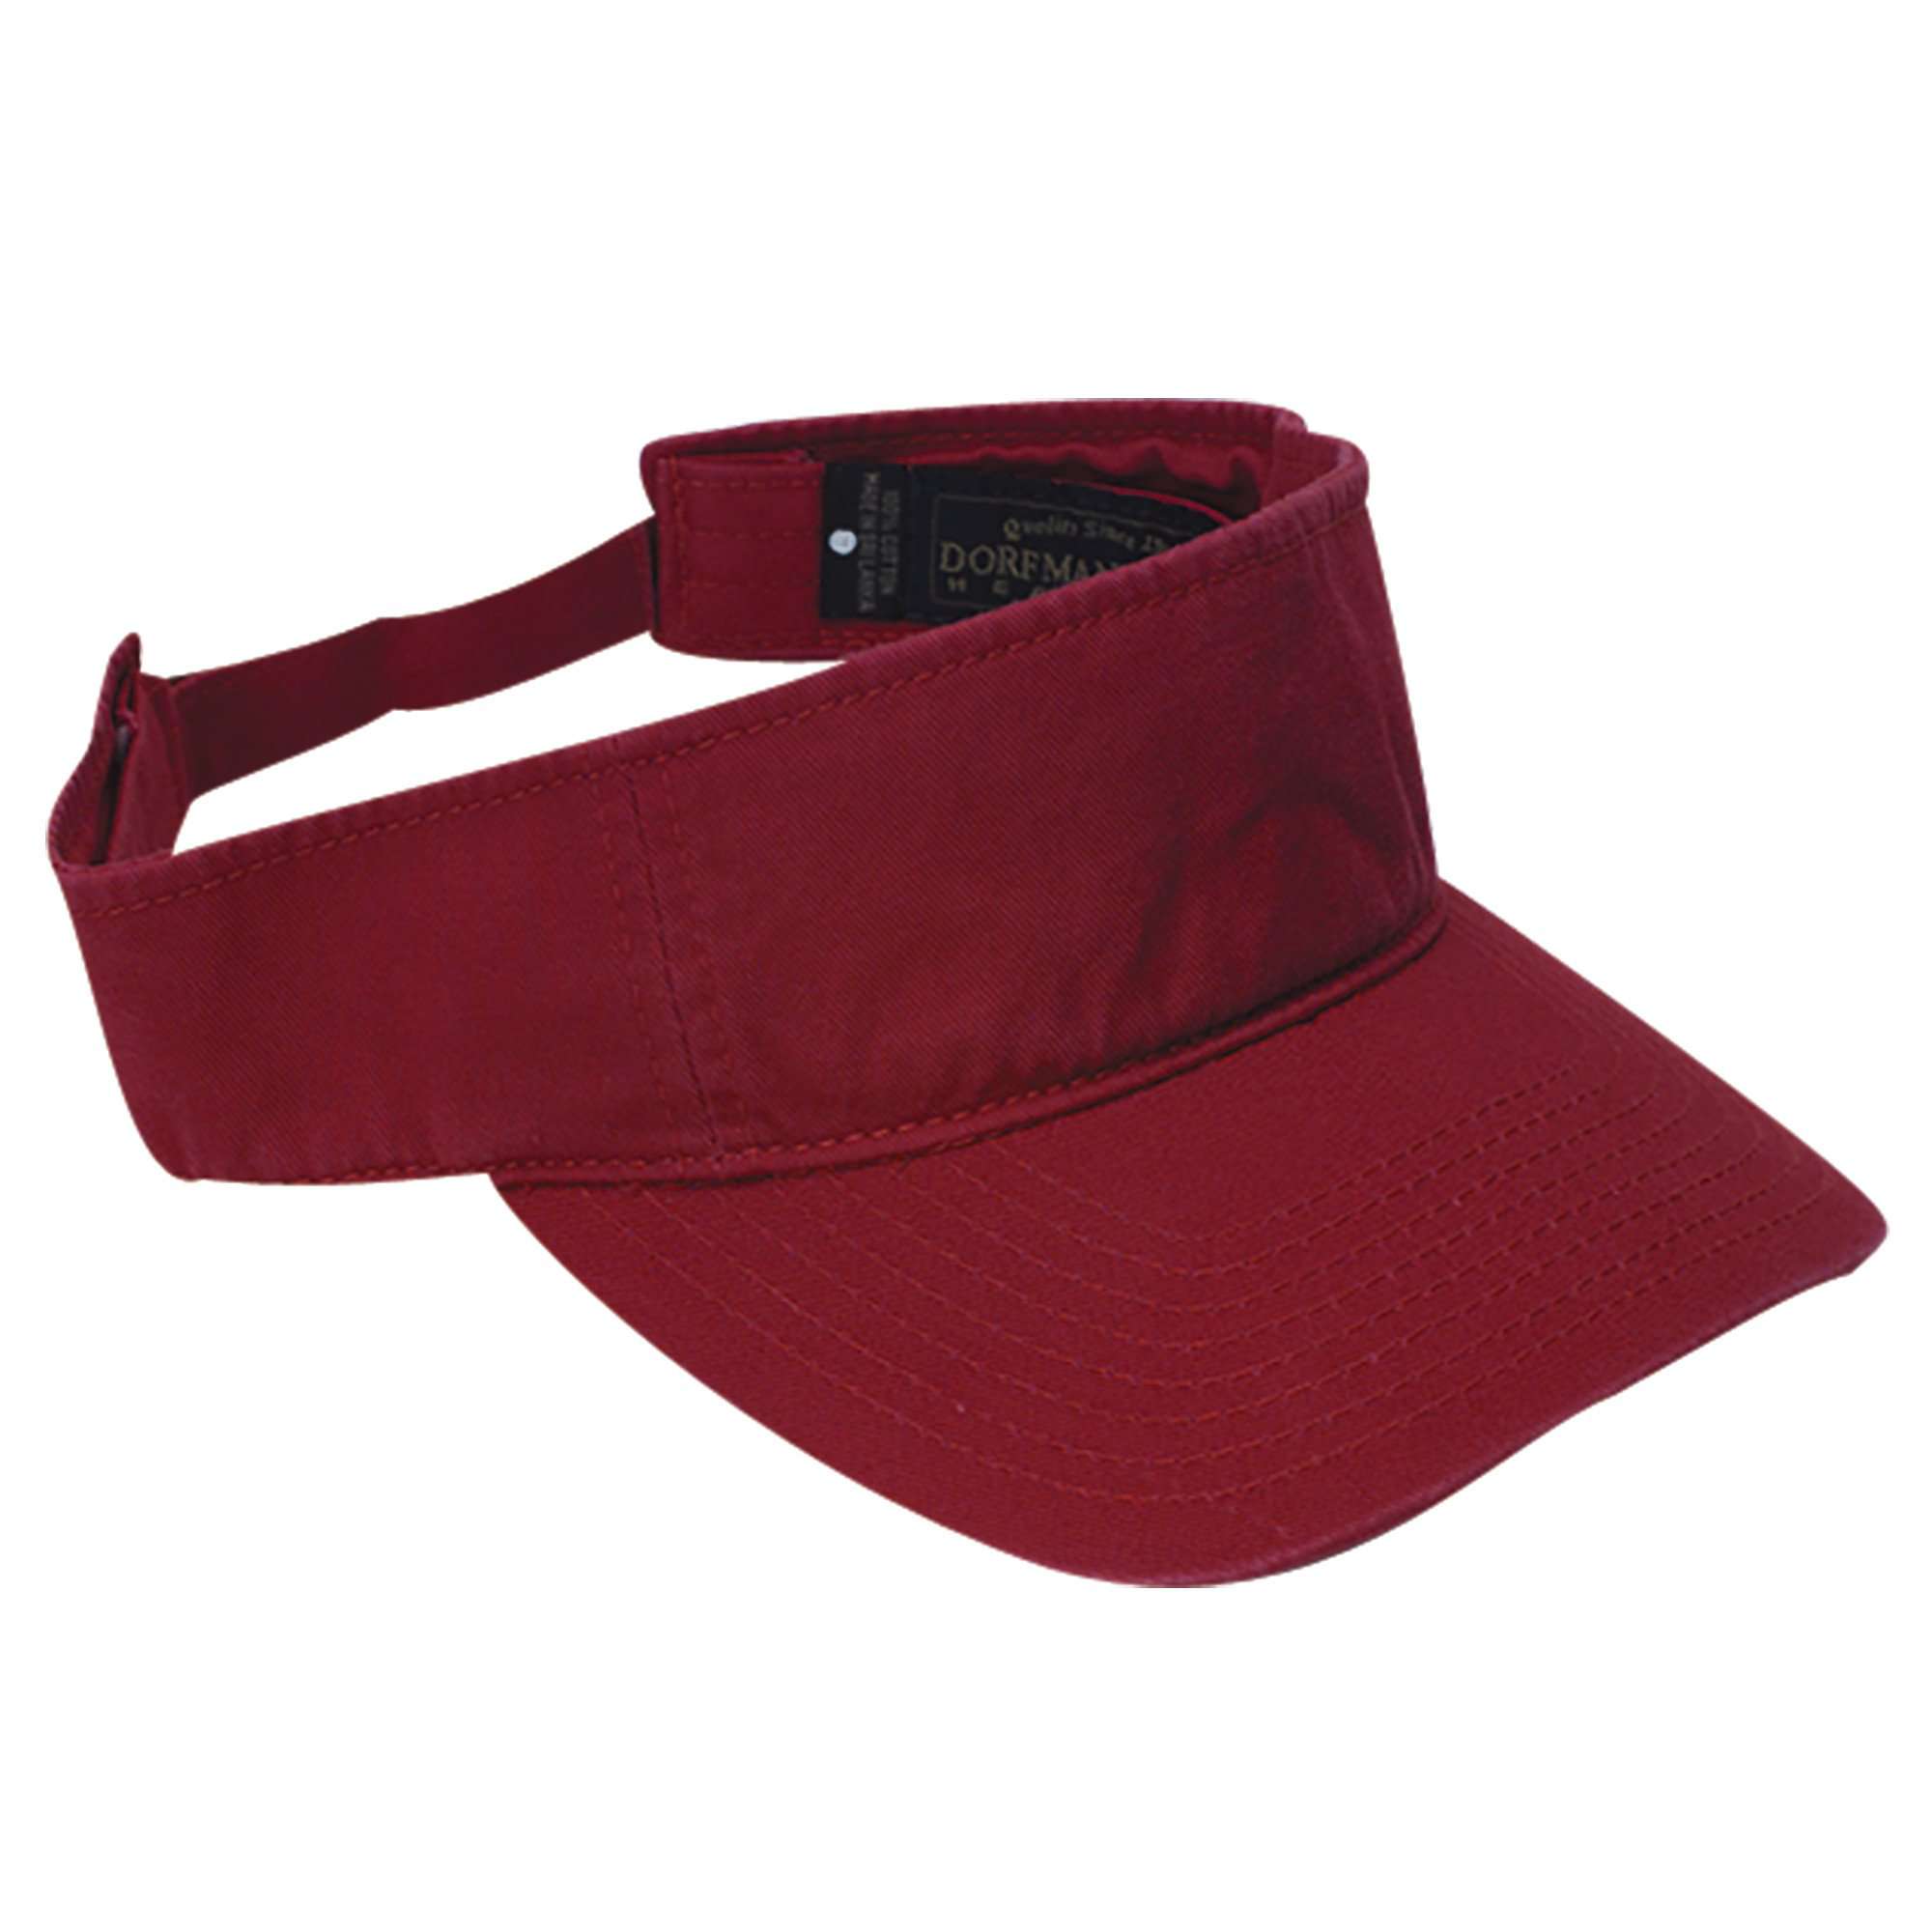 DPC Men's Twill Sun Visor Visor Cap Dorfman Hat Co. v7rd Red  